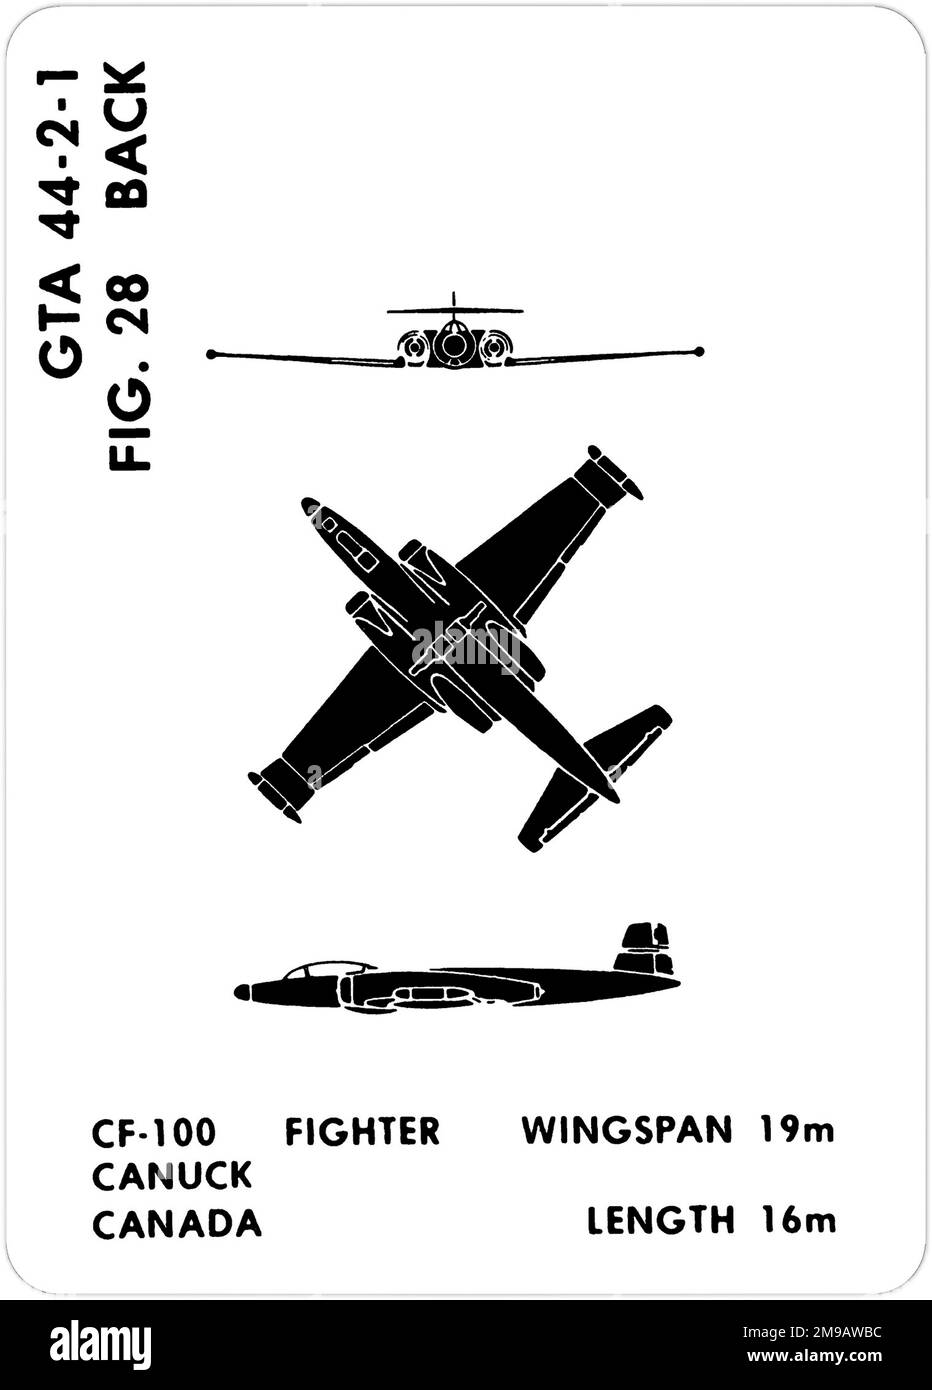 Avro Canada CF-100 Canuck. Questa è una delle serie di Graphics Training Aids (GTA) utilizzati dall'esercito degli Stati Uniti per addestrare il loro personale a riconoscere gli aerei amichevoli e ostili. Questo particolare set, GTA 44-2-1, è stato pubblicato nel July1977. Il set comprende aerei provenienti da: Canada, Italia, Regno Unito, Stati Uniti e URSS. Foto Stock